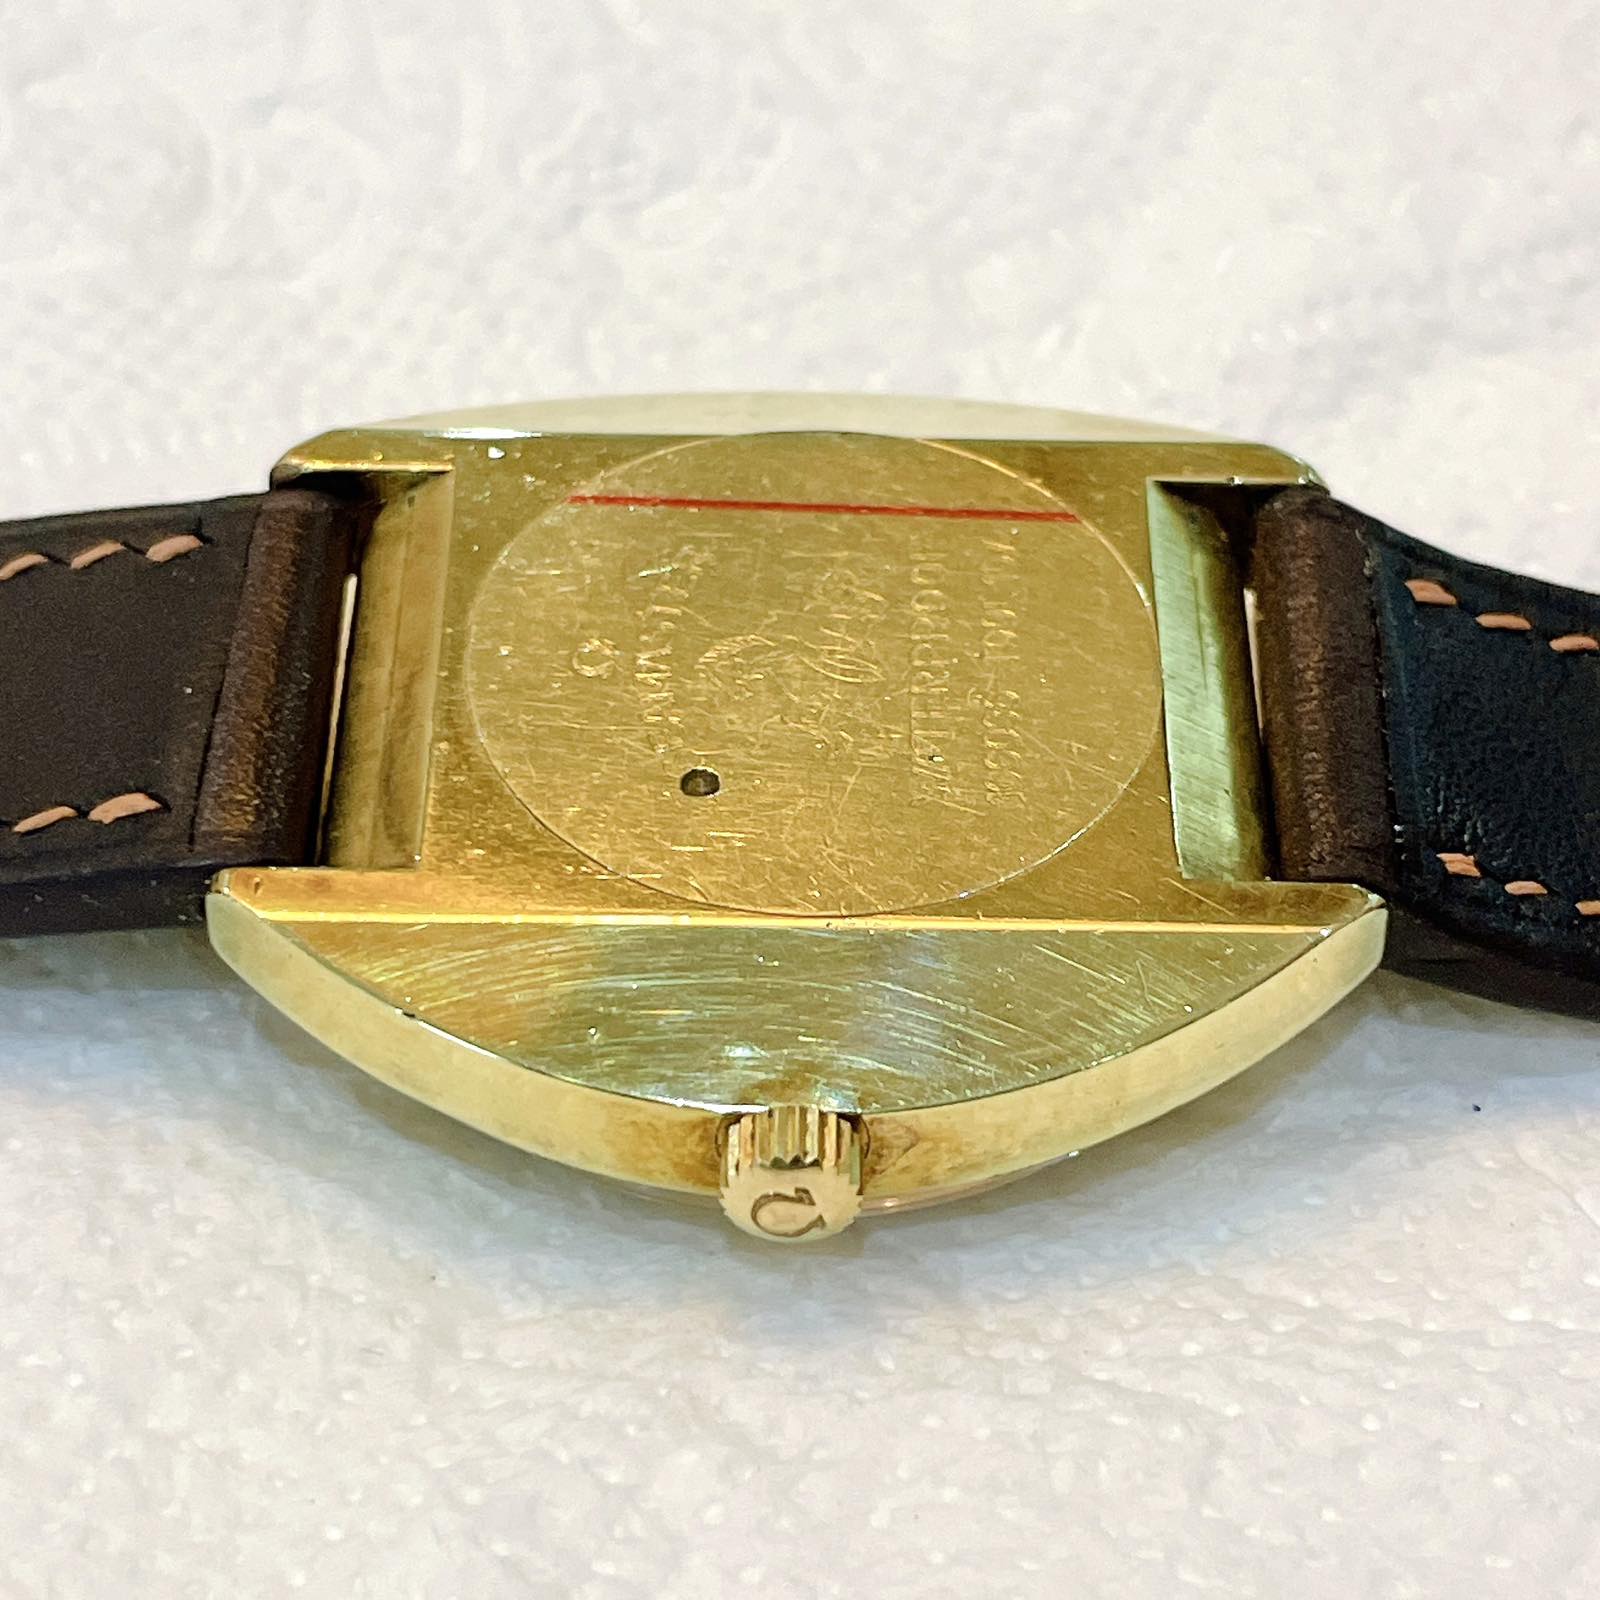 Đồng hồ cổ Omega Seamaster Cosmic Automatic chính hãng Thụy Sĩ